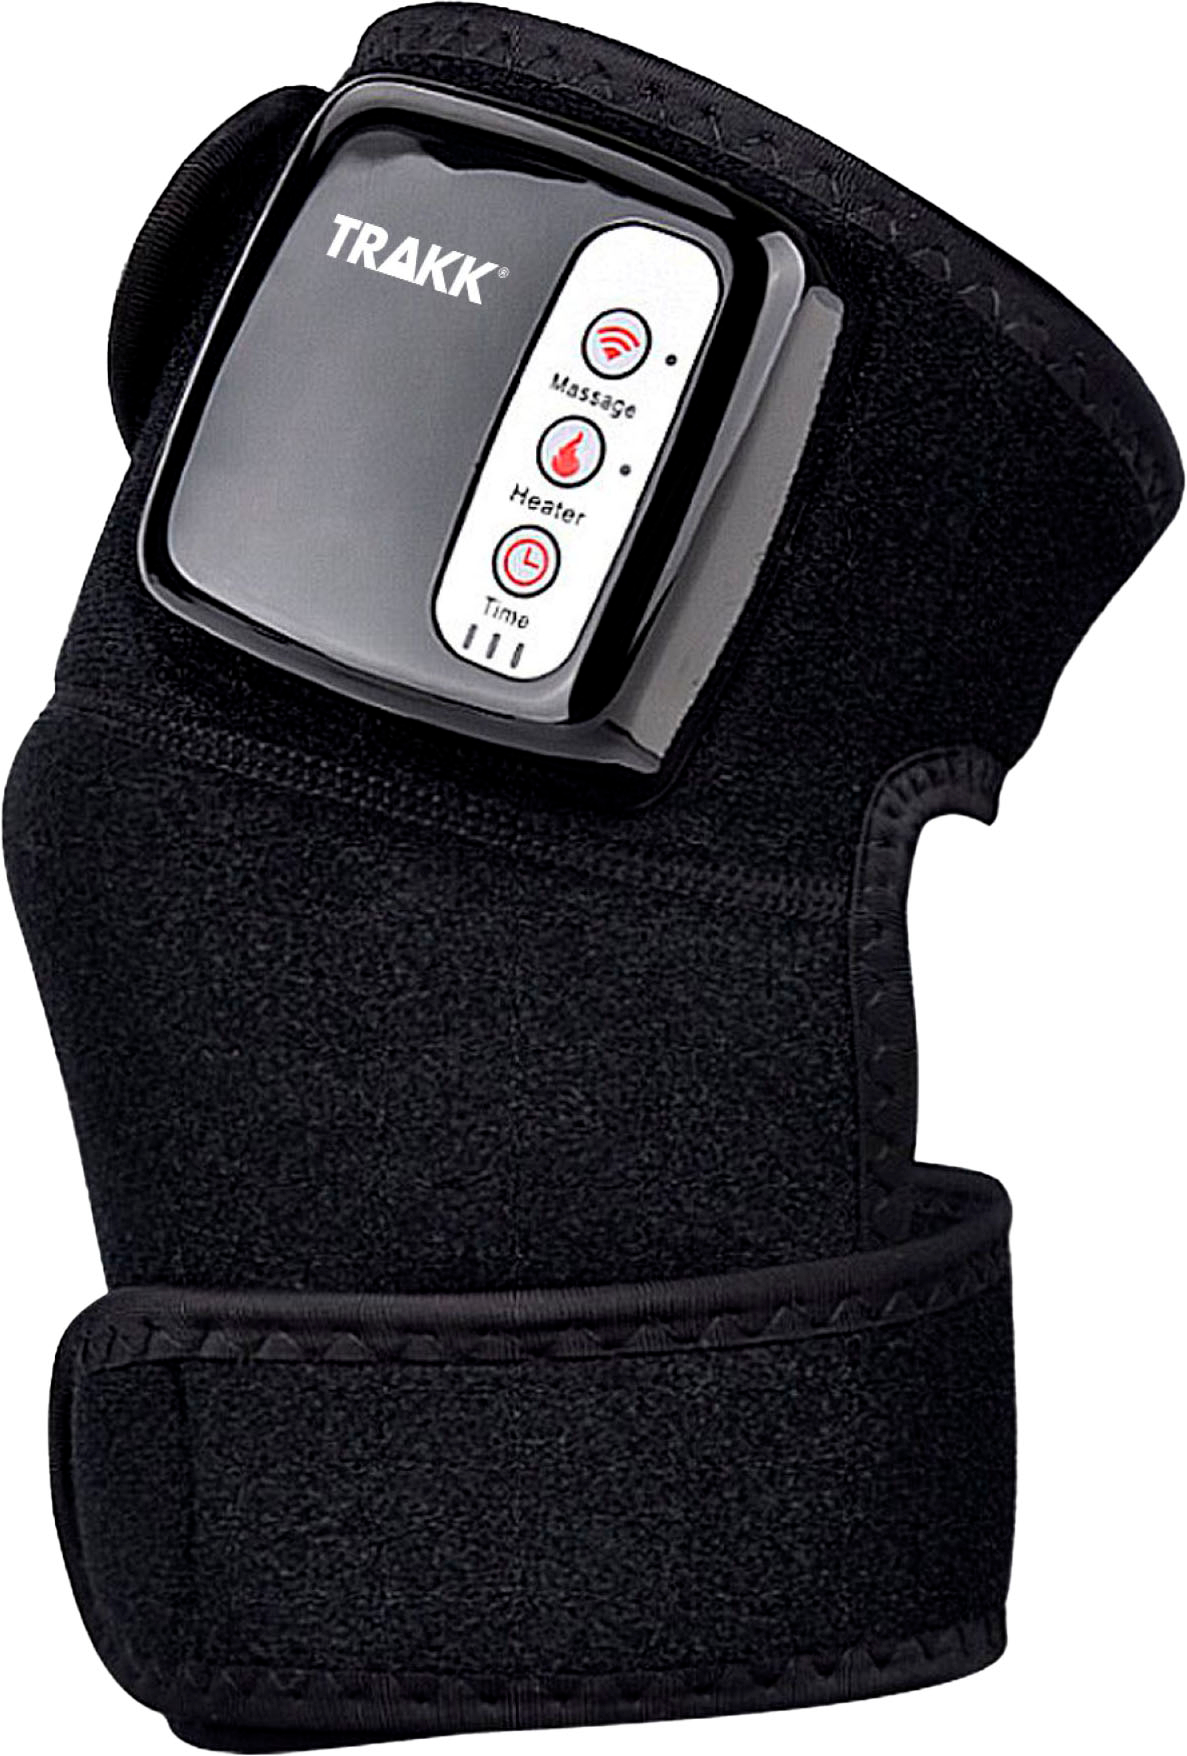 TRAKK Heating Massaging Knee & Shoulder Brace and Wrap Black TR-HTMASKN-200  - Best Buy